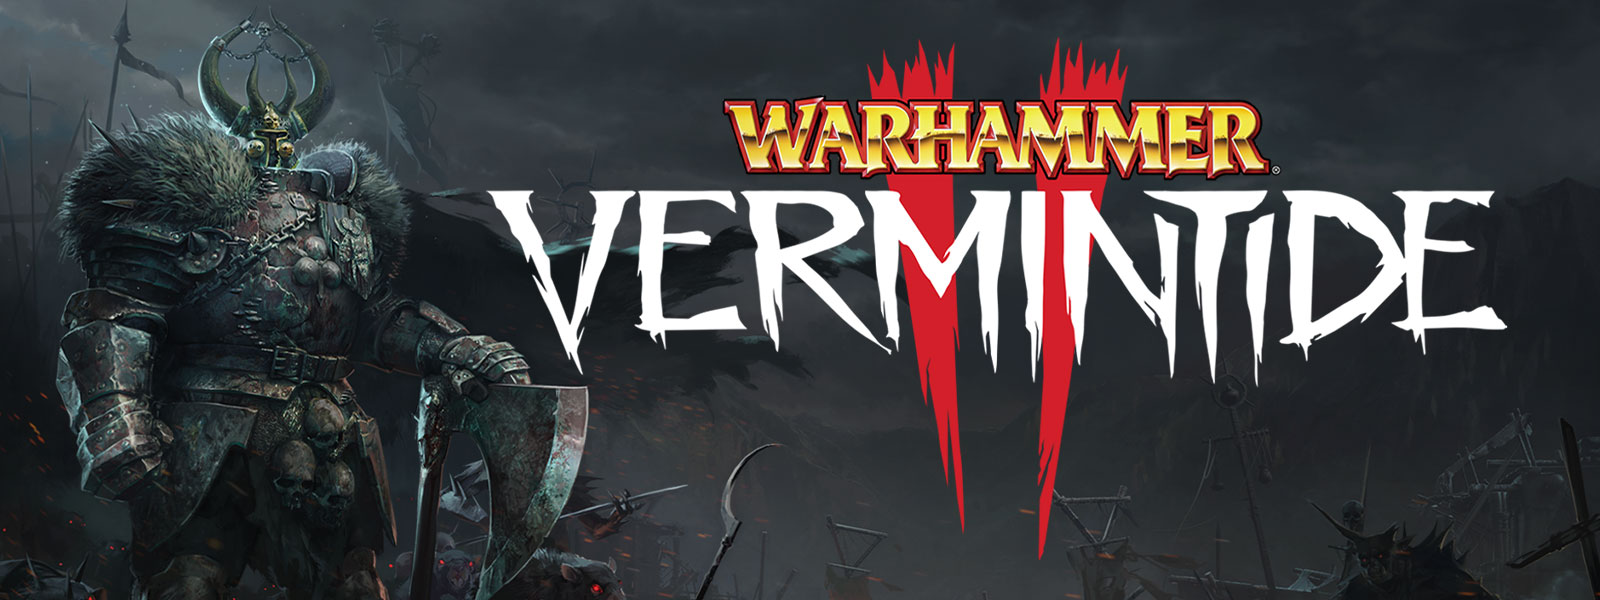 Warhammer: Vermintide 2, Een gepantserd figuur met bontpaletten staat in de voorhoede van een leger ratten met gloeiende ogen.